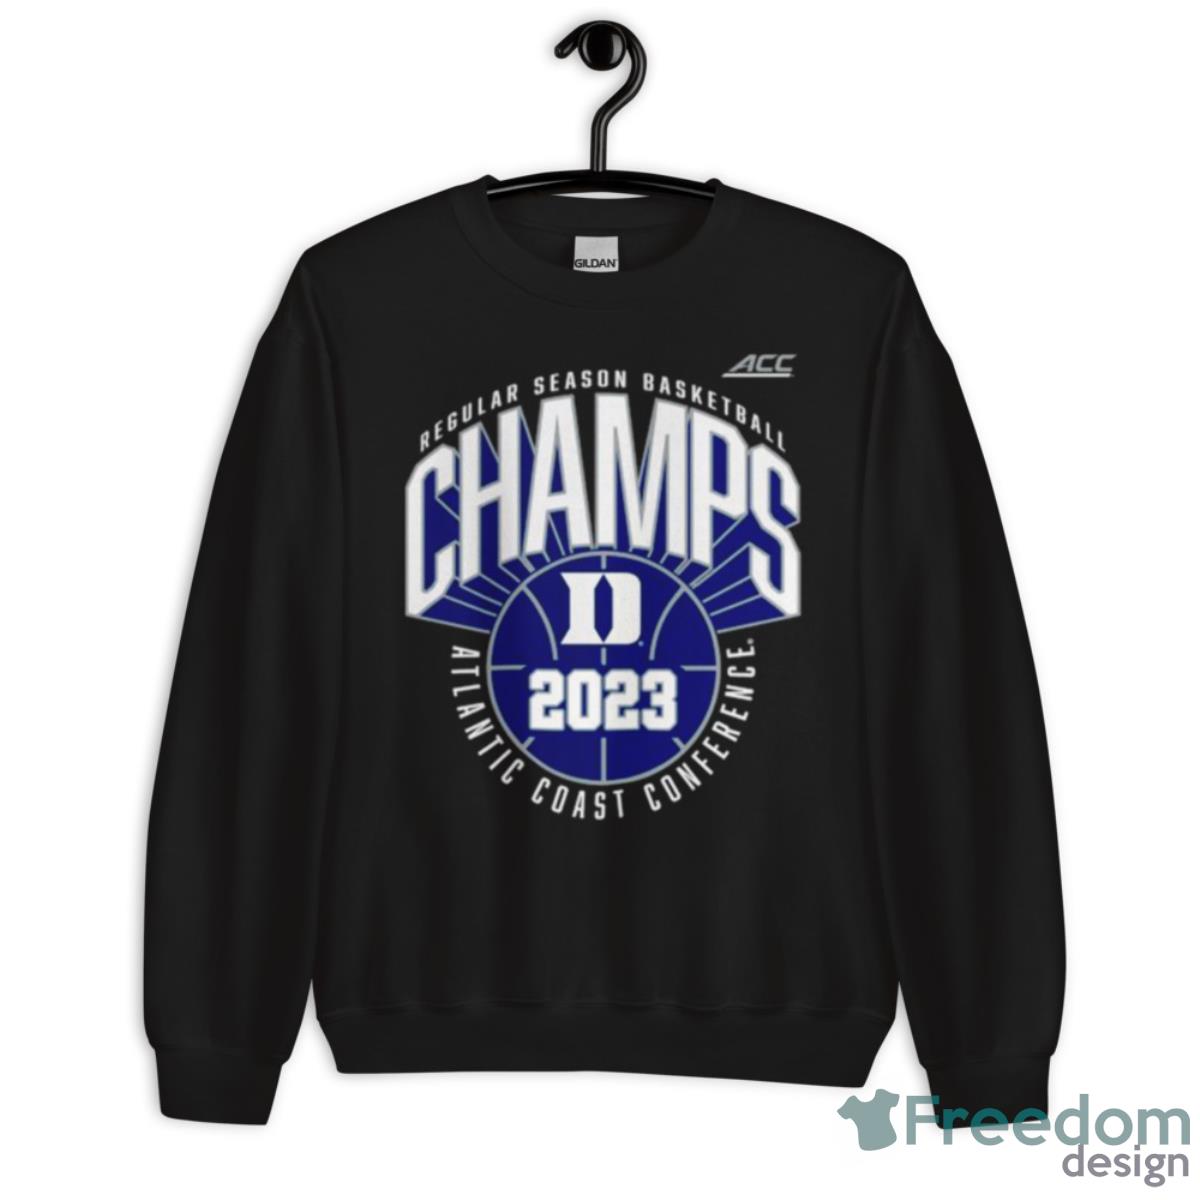 Duke Blue Devils 2023 ACC Men’s Basketball Regular Season Champions Shirt